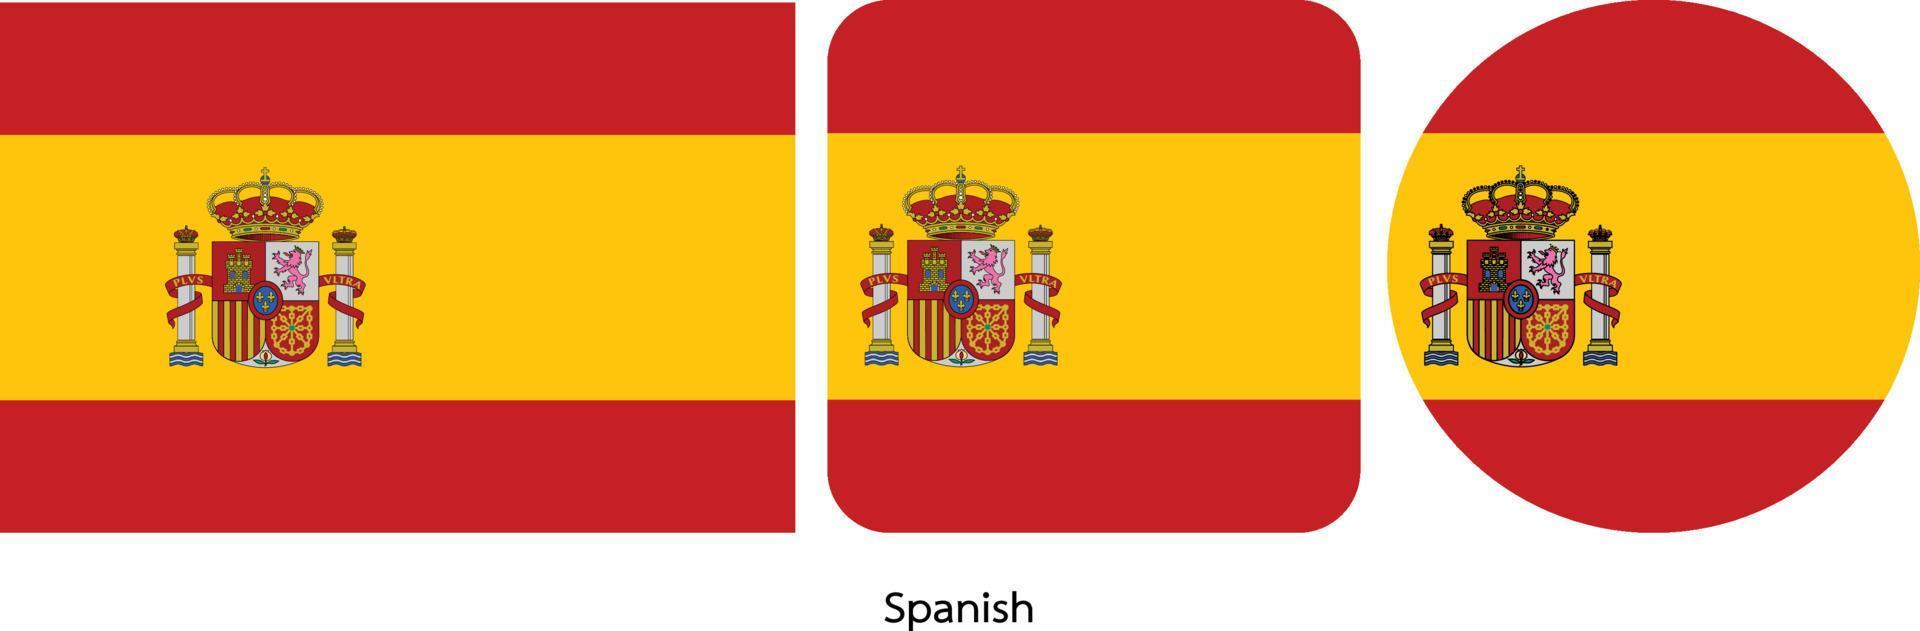 bandeira espanhola, ilustração vetorial vetor